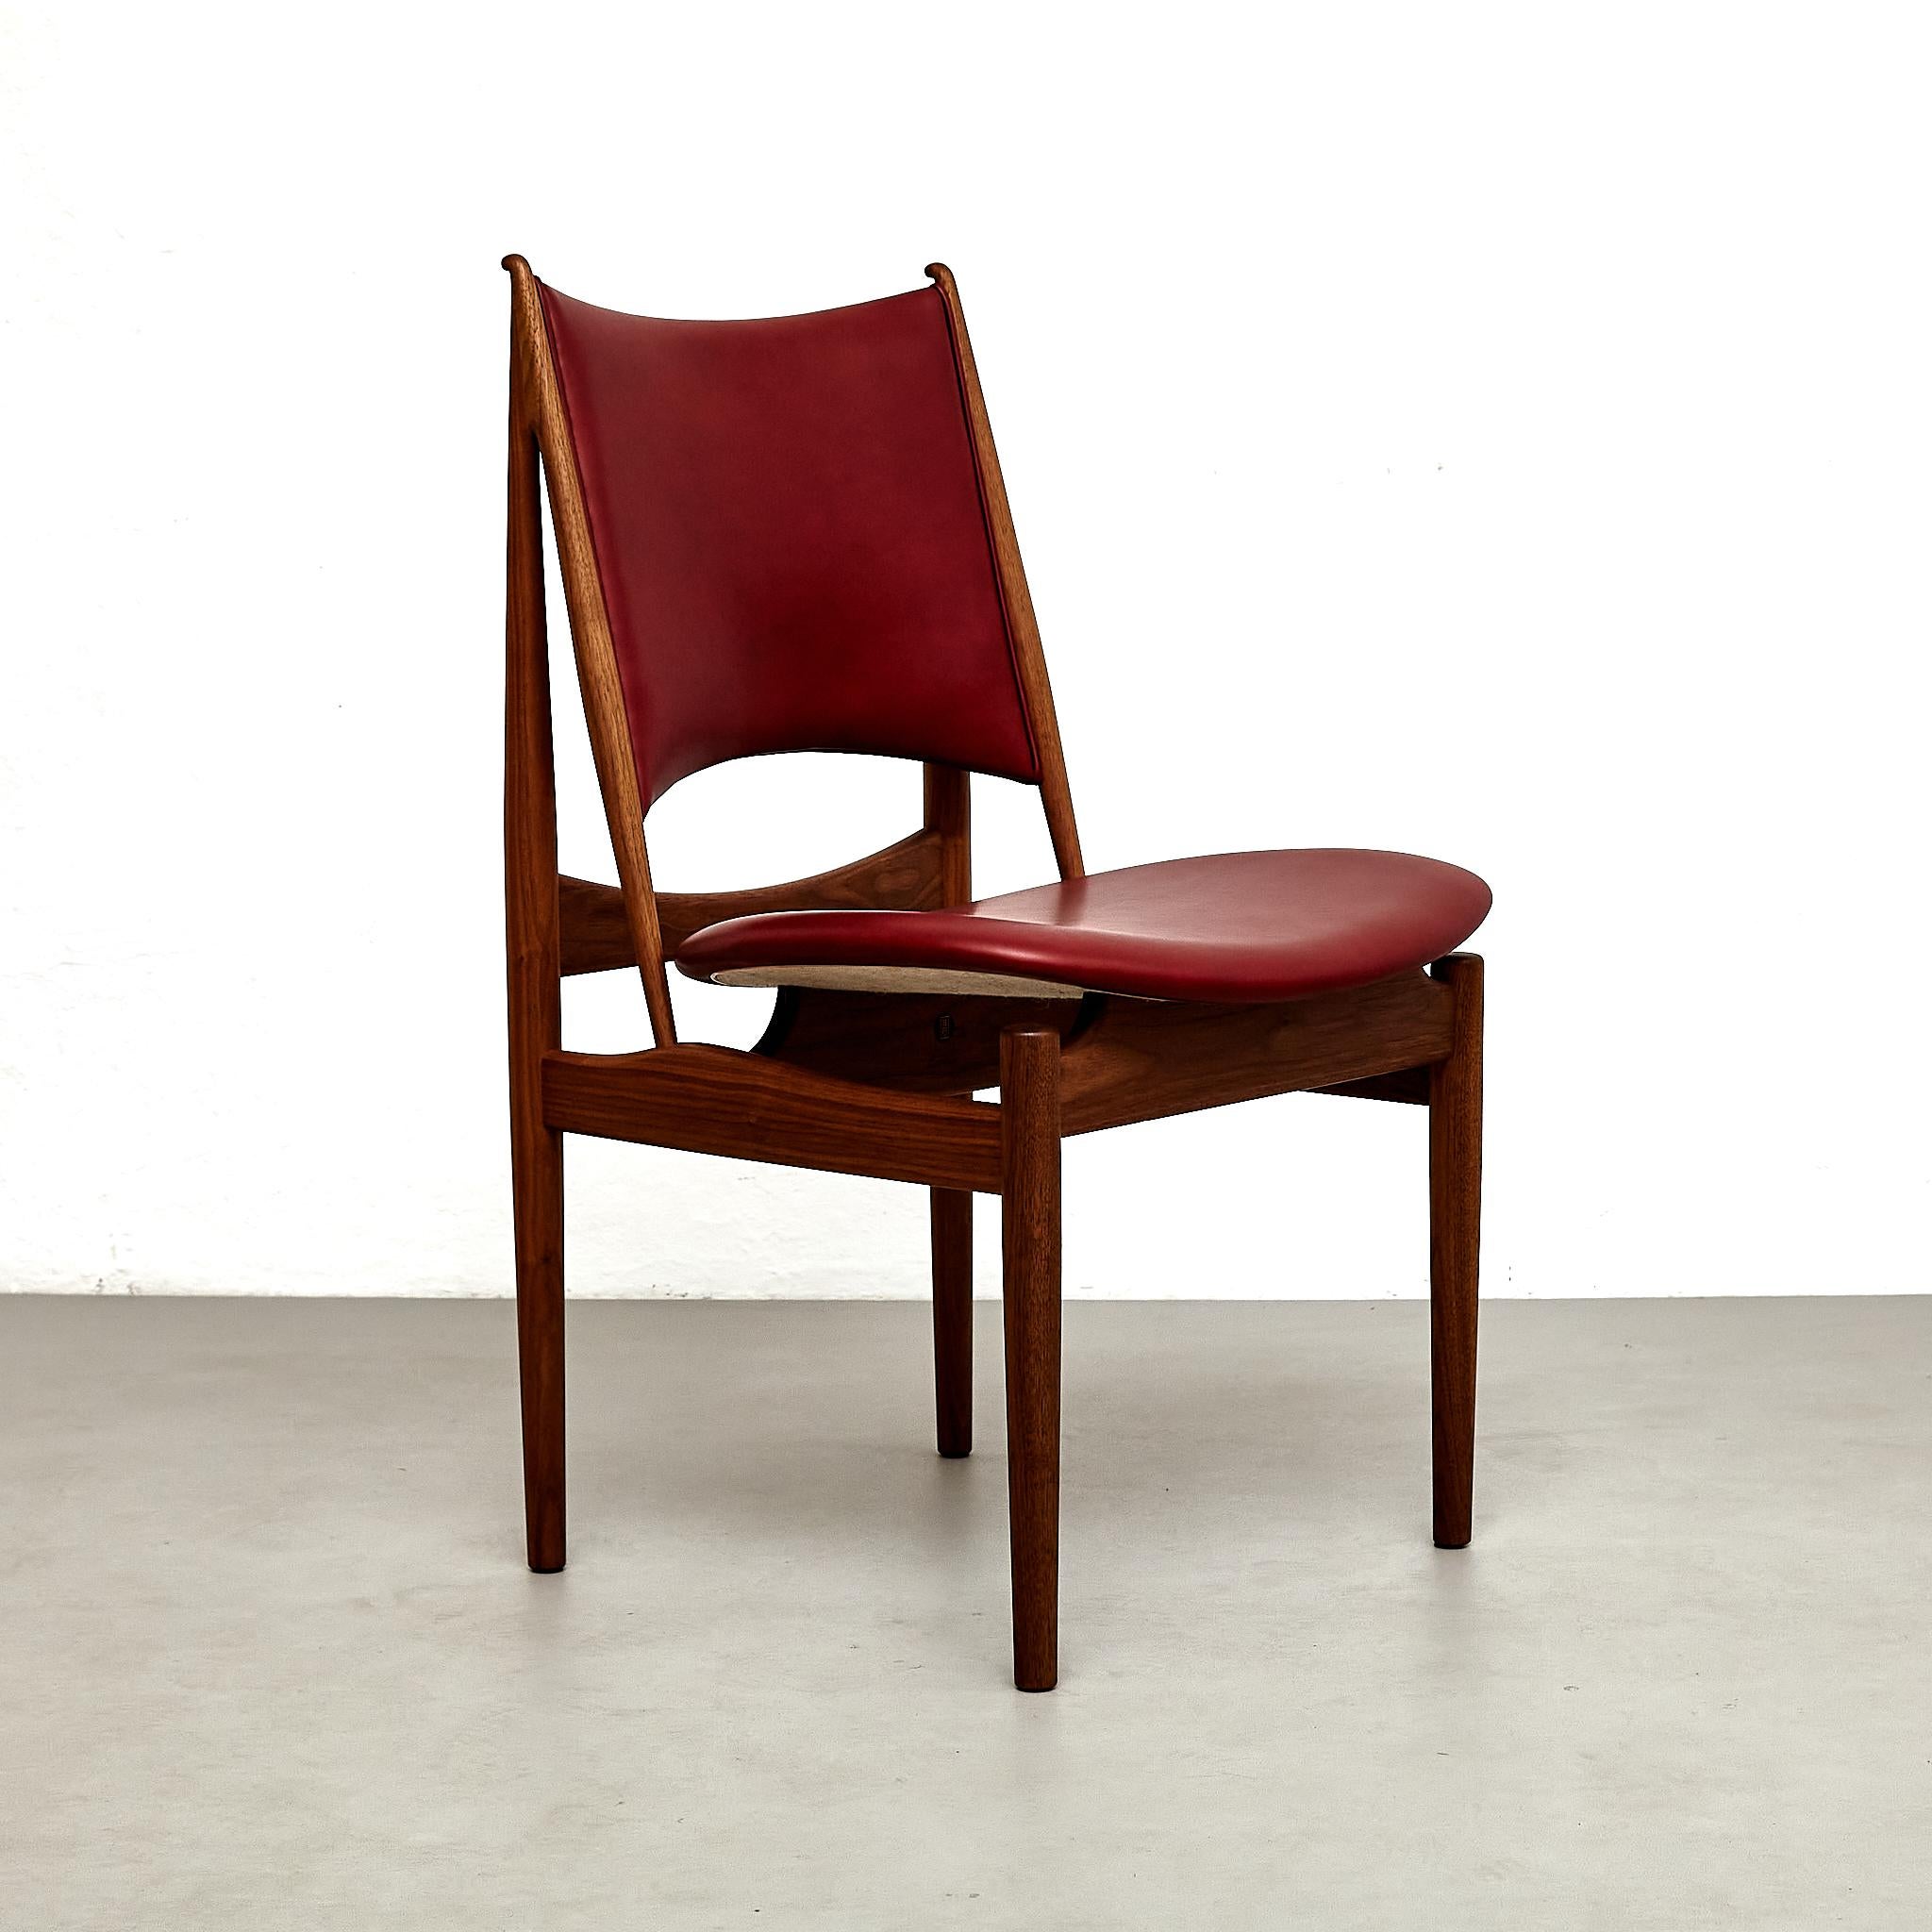 Fauteuil conçu par Finn Juhls en 1949, relancé en 2014.
Fabriqué par la Maison Finn Juhl au Danemark.

Les critiques de design ont décrit la chaise égyptienne de Finn Juhls comme un mélange miraculeux de principes de conception de l'Égypte ancienne,